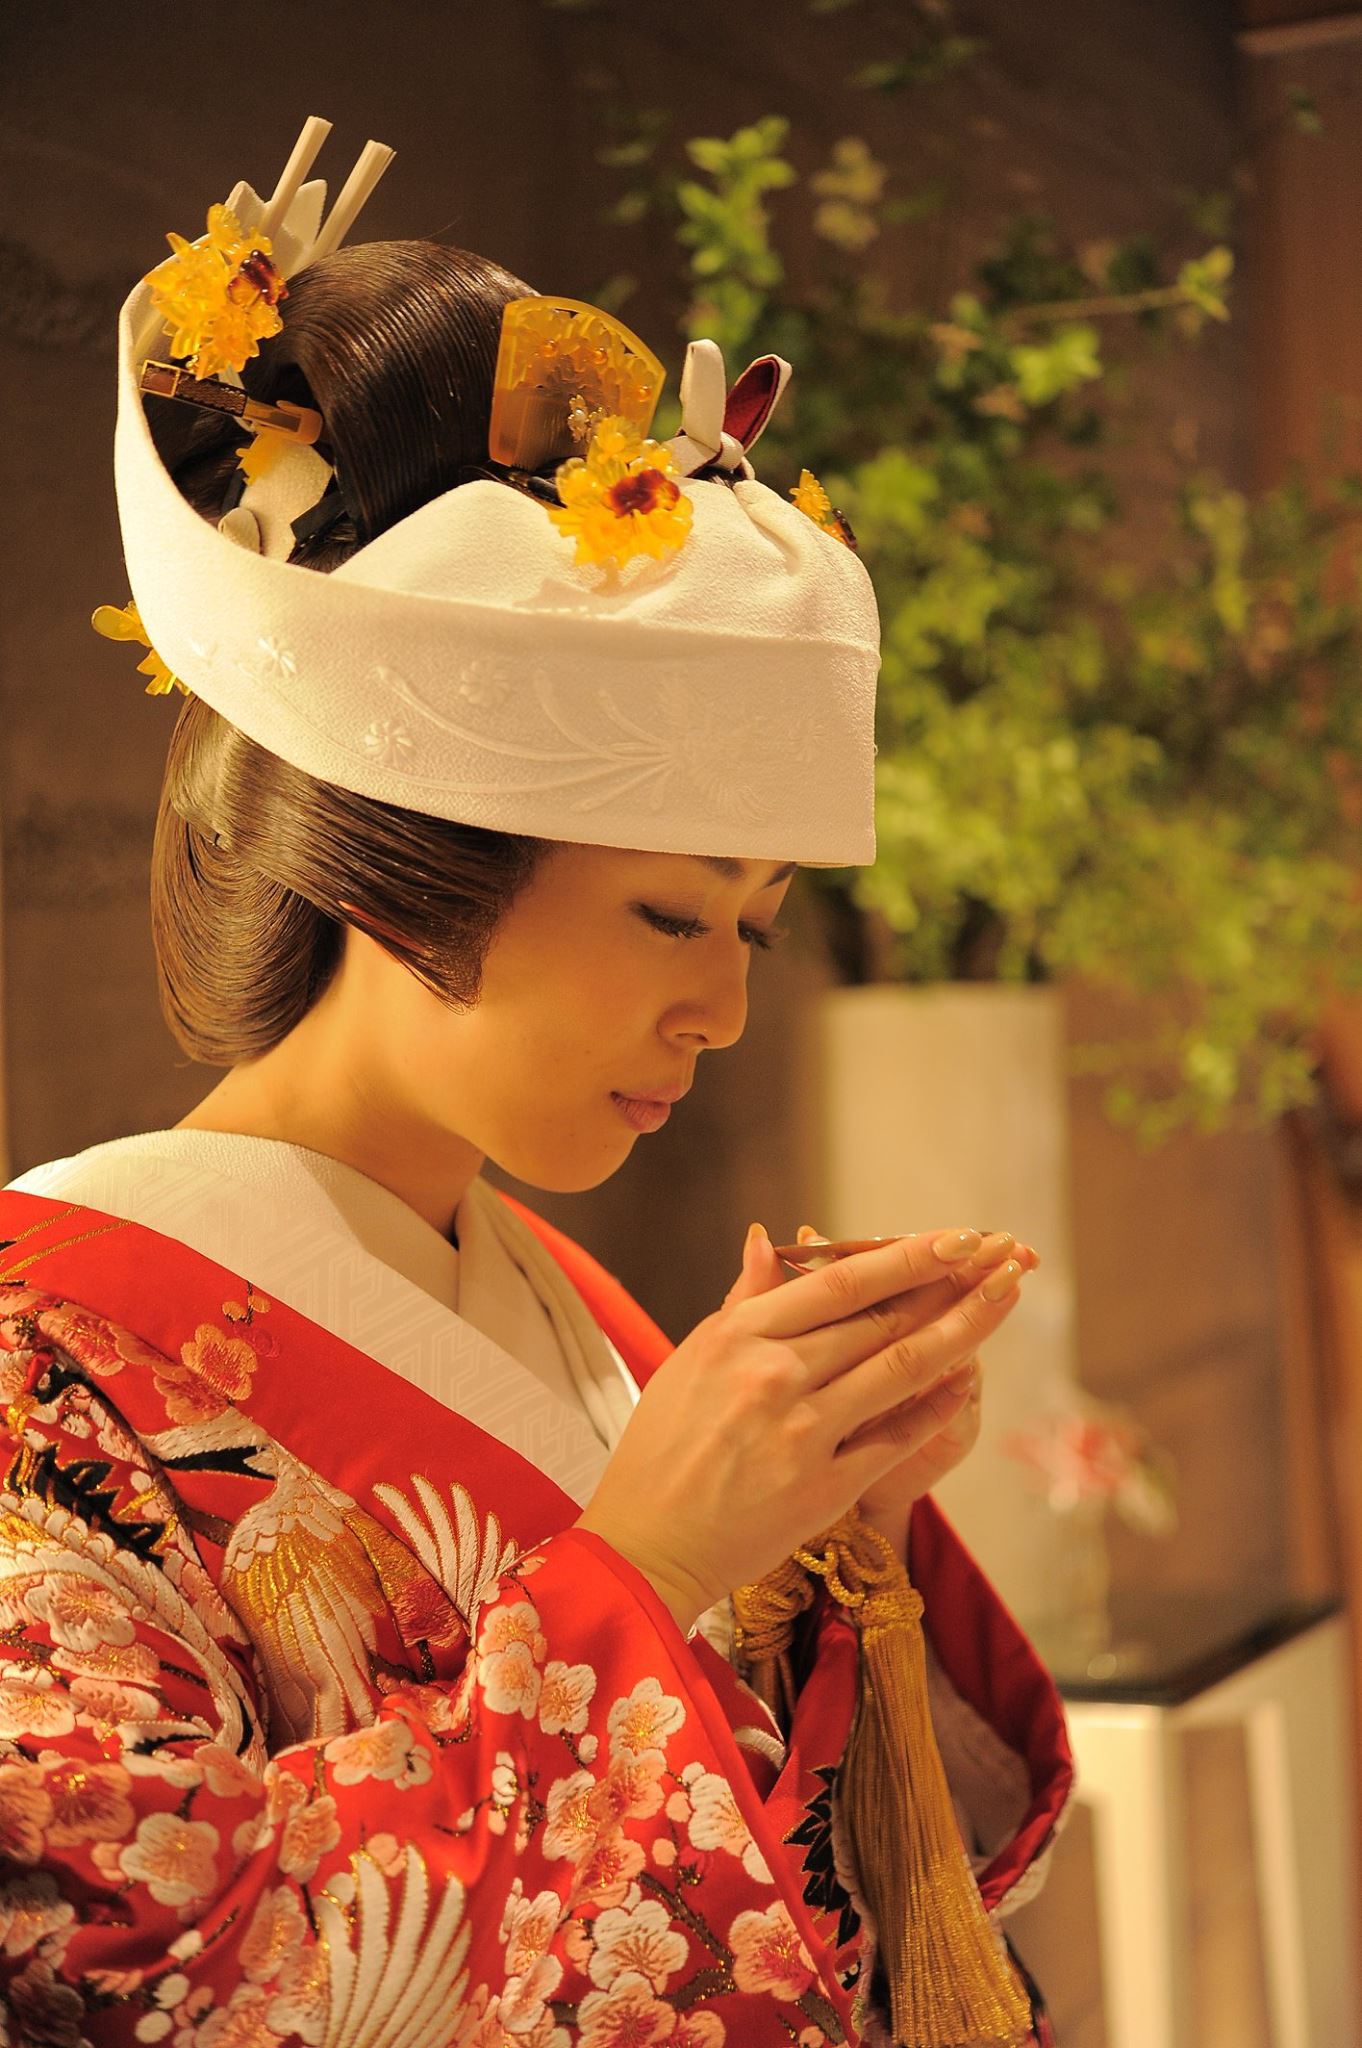 日本の結婚式